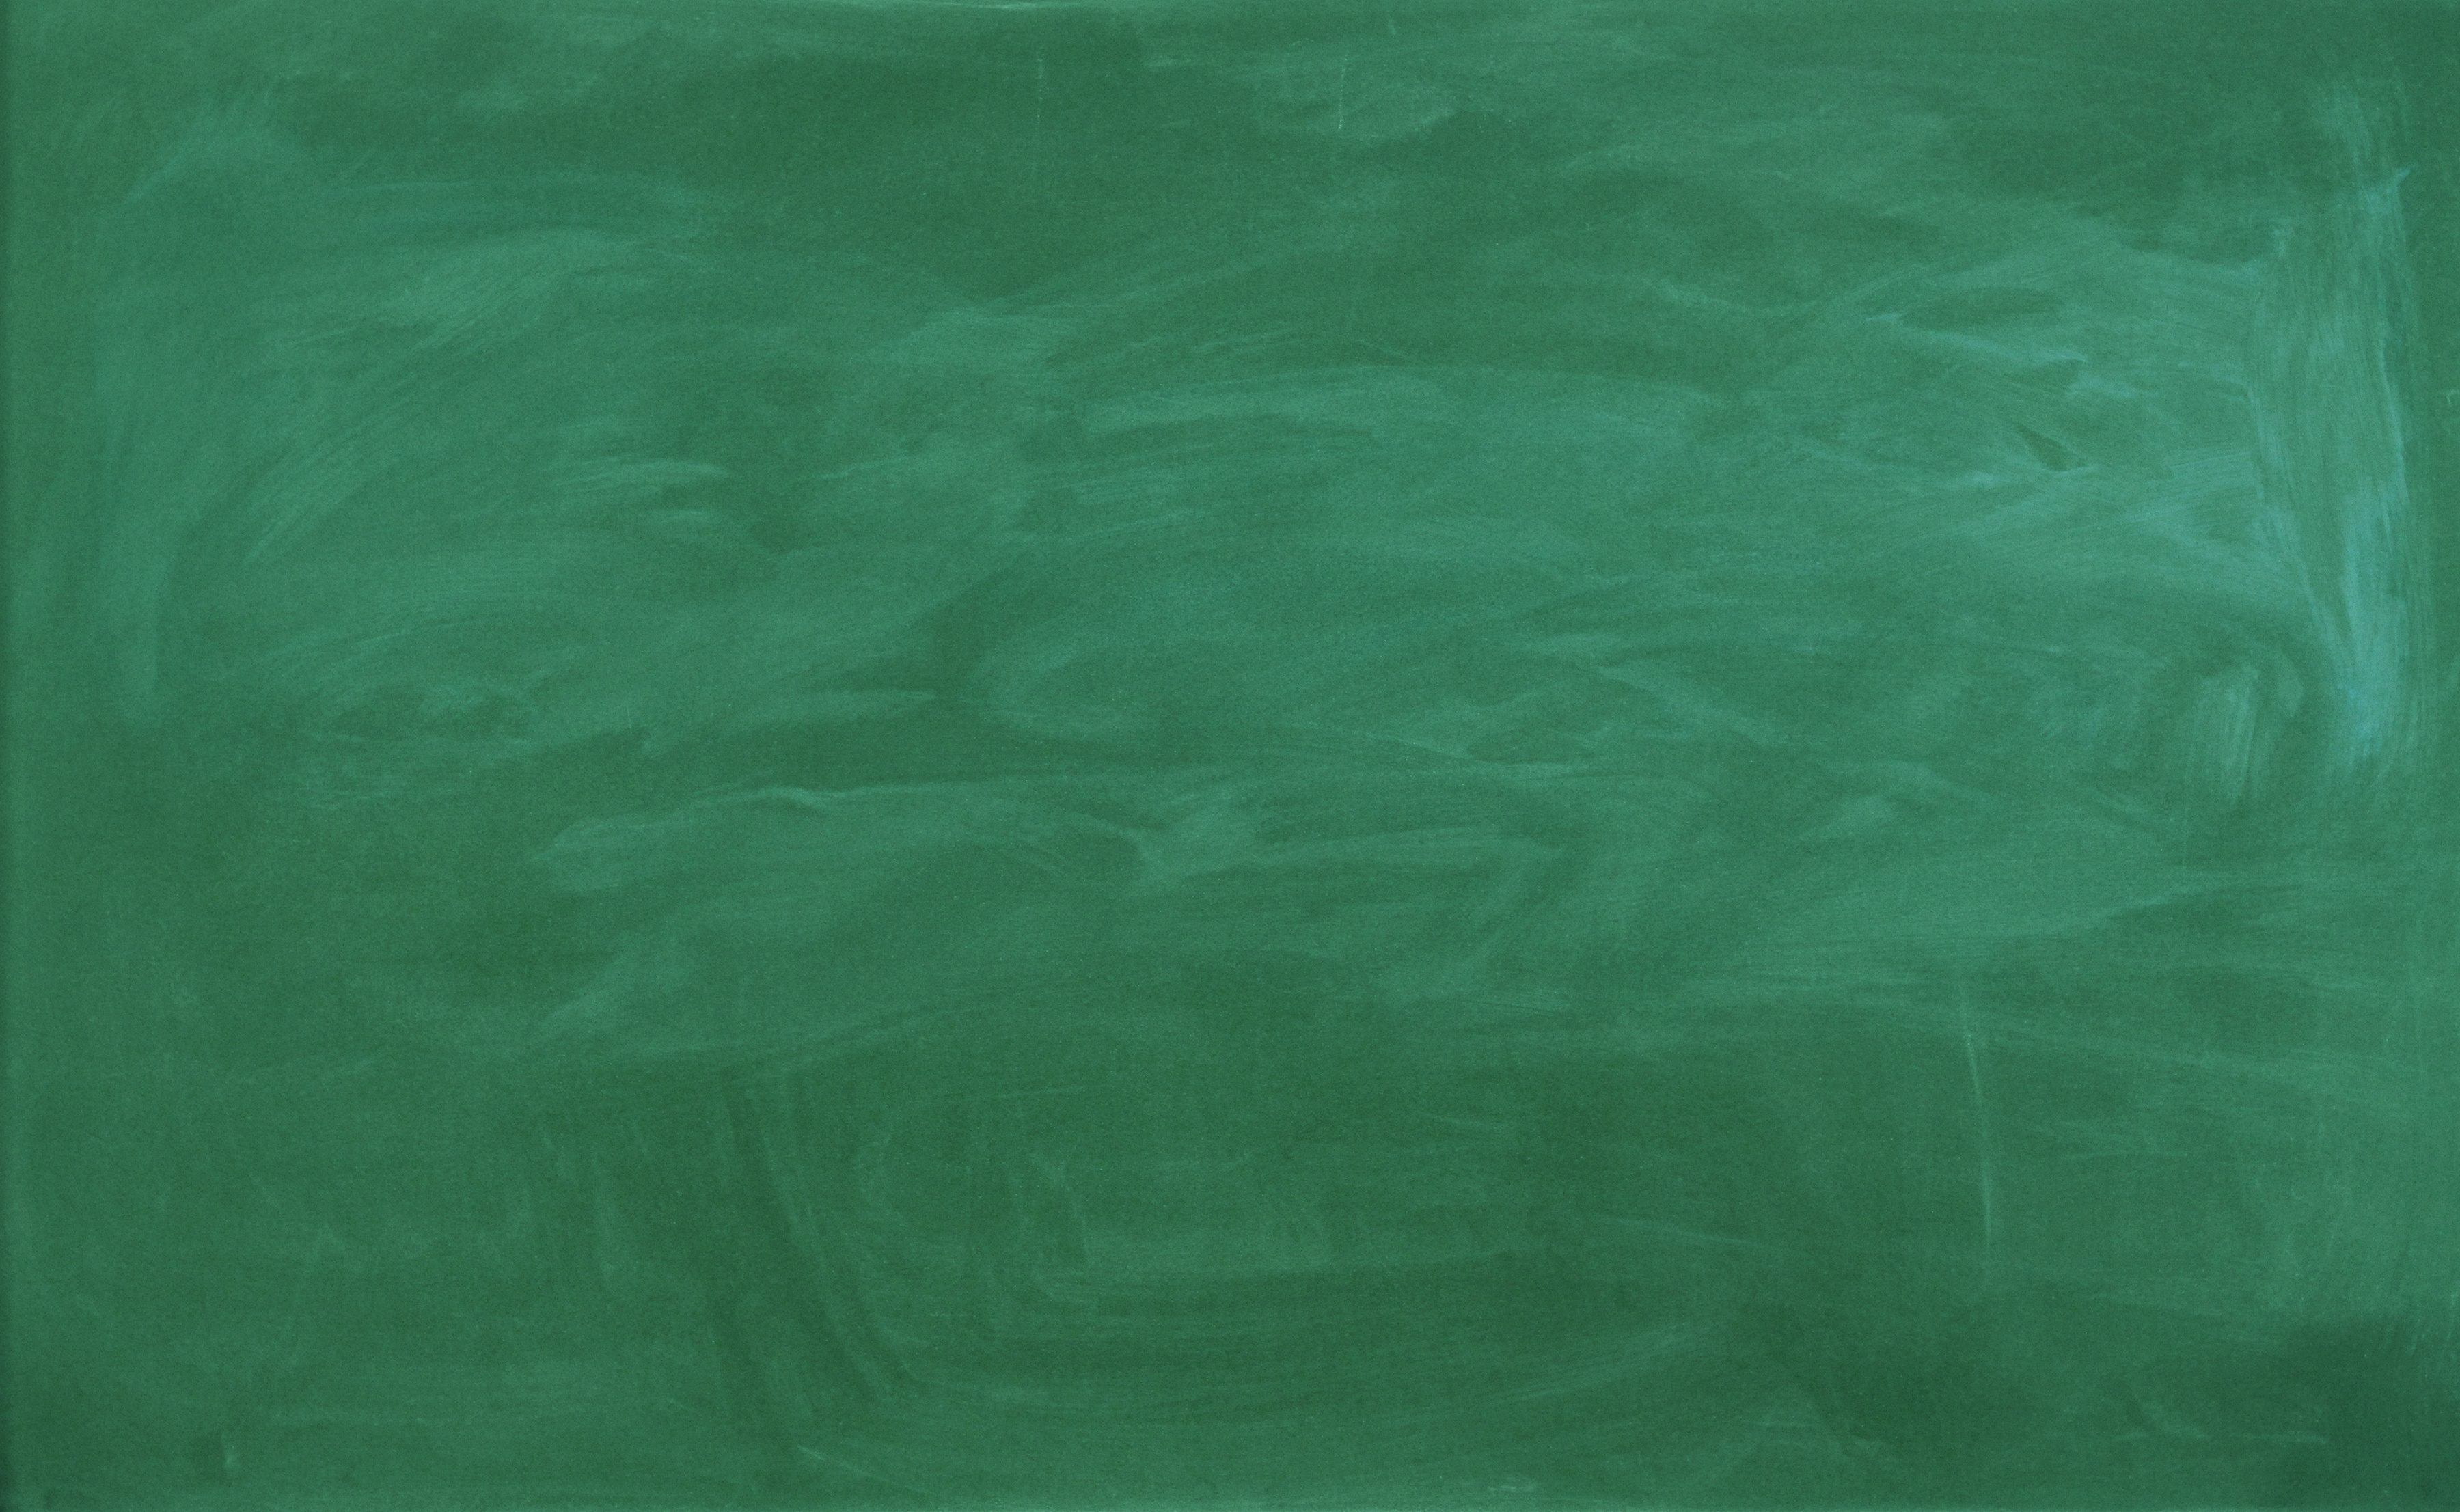 green blackboard